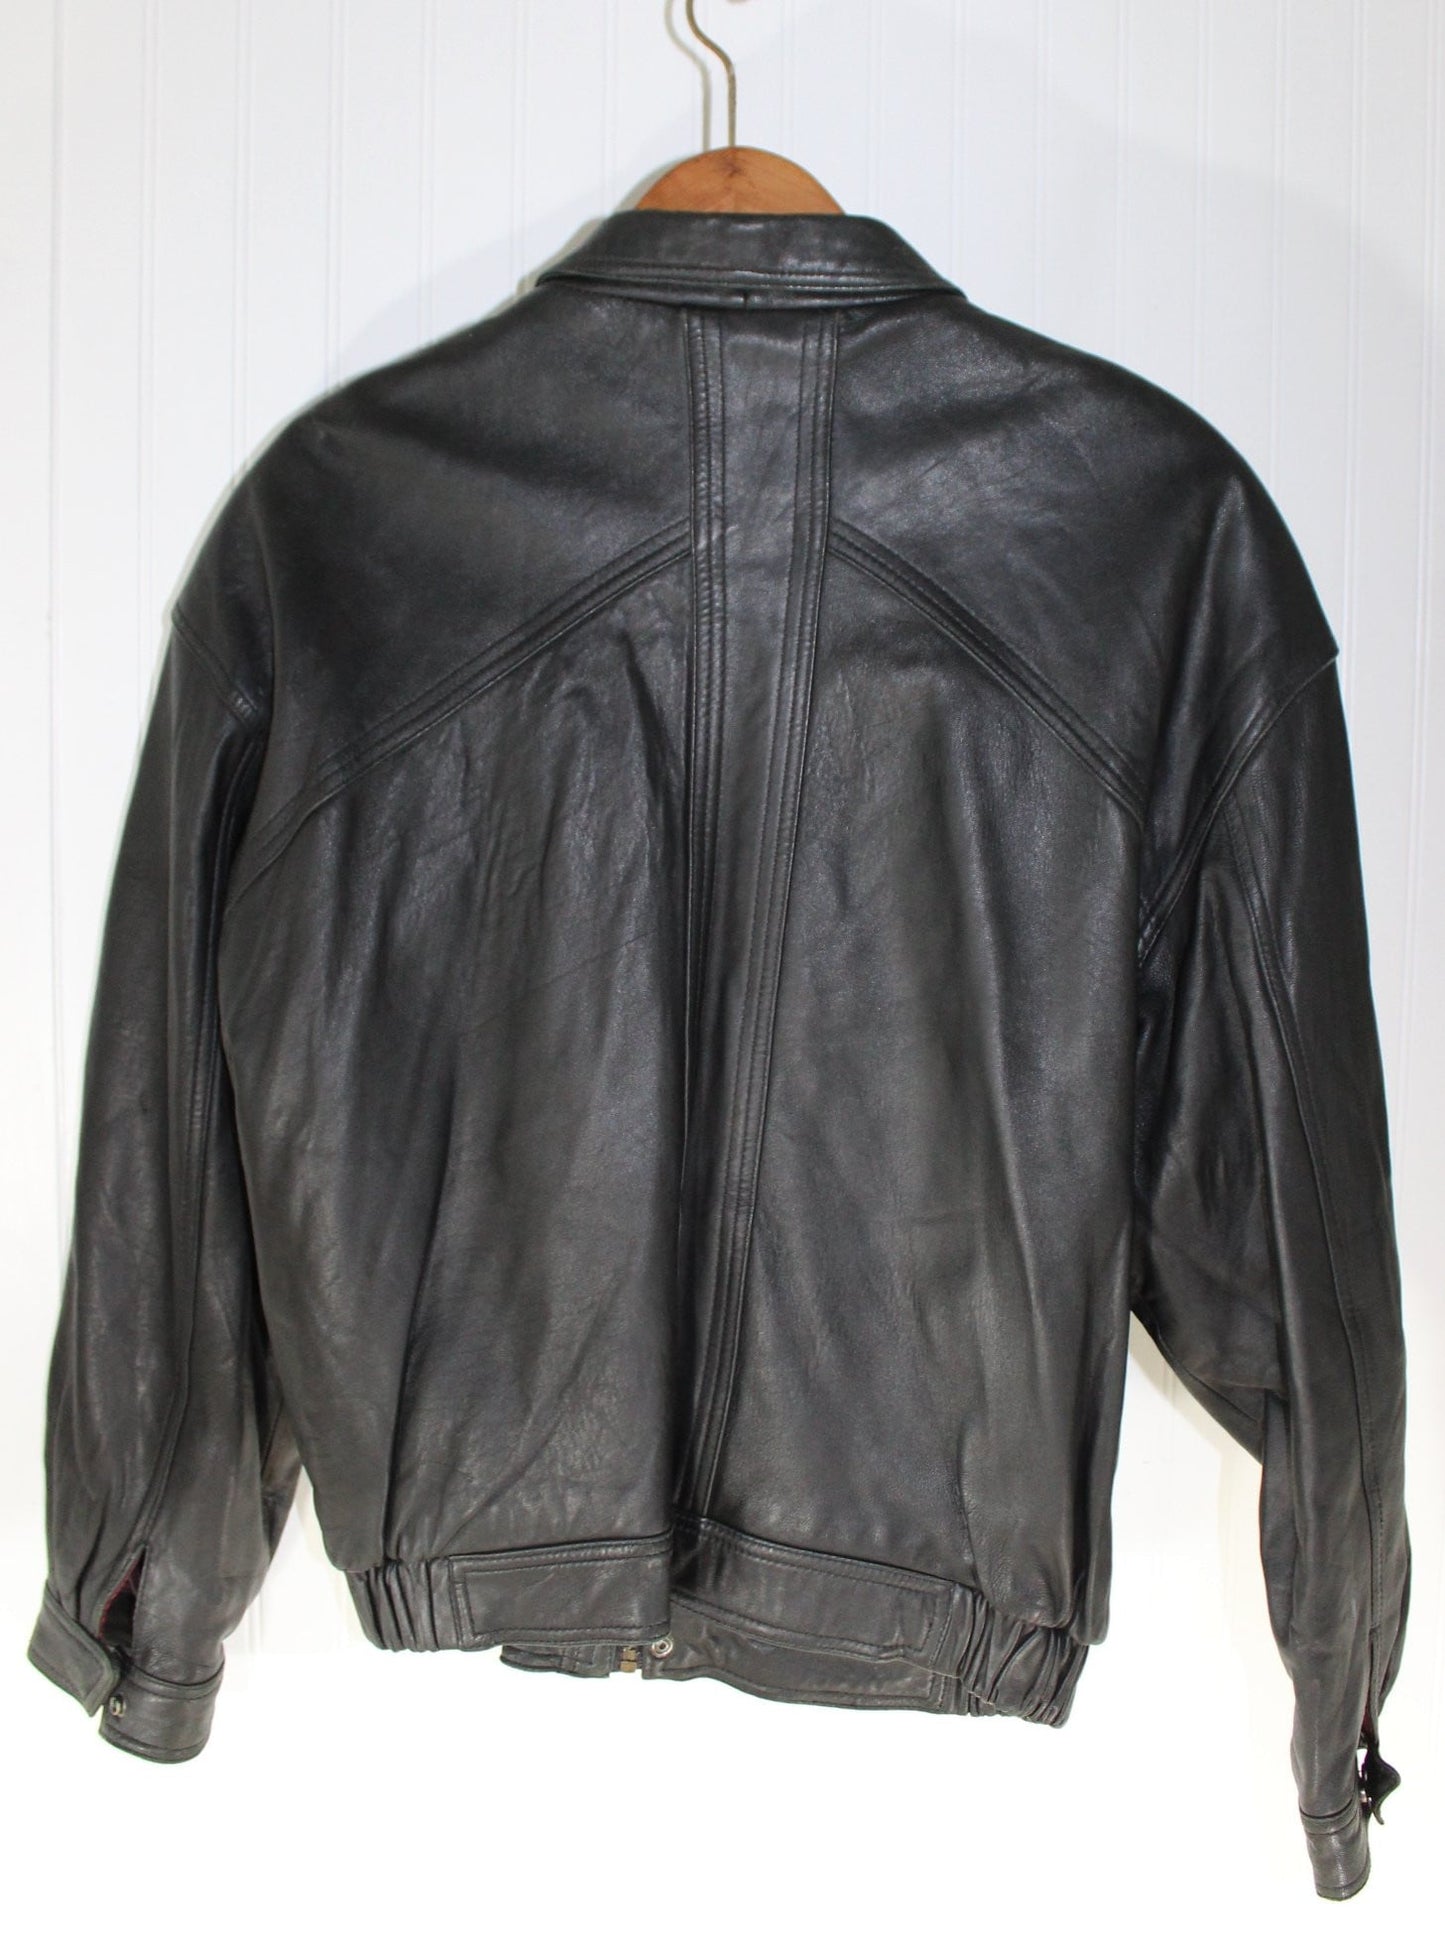 Ottimo Leather Black Bomber Jacket L Vintage - Soft Supple Warm handsome coat